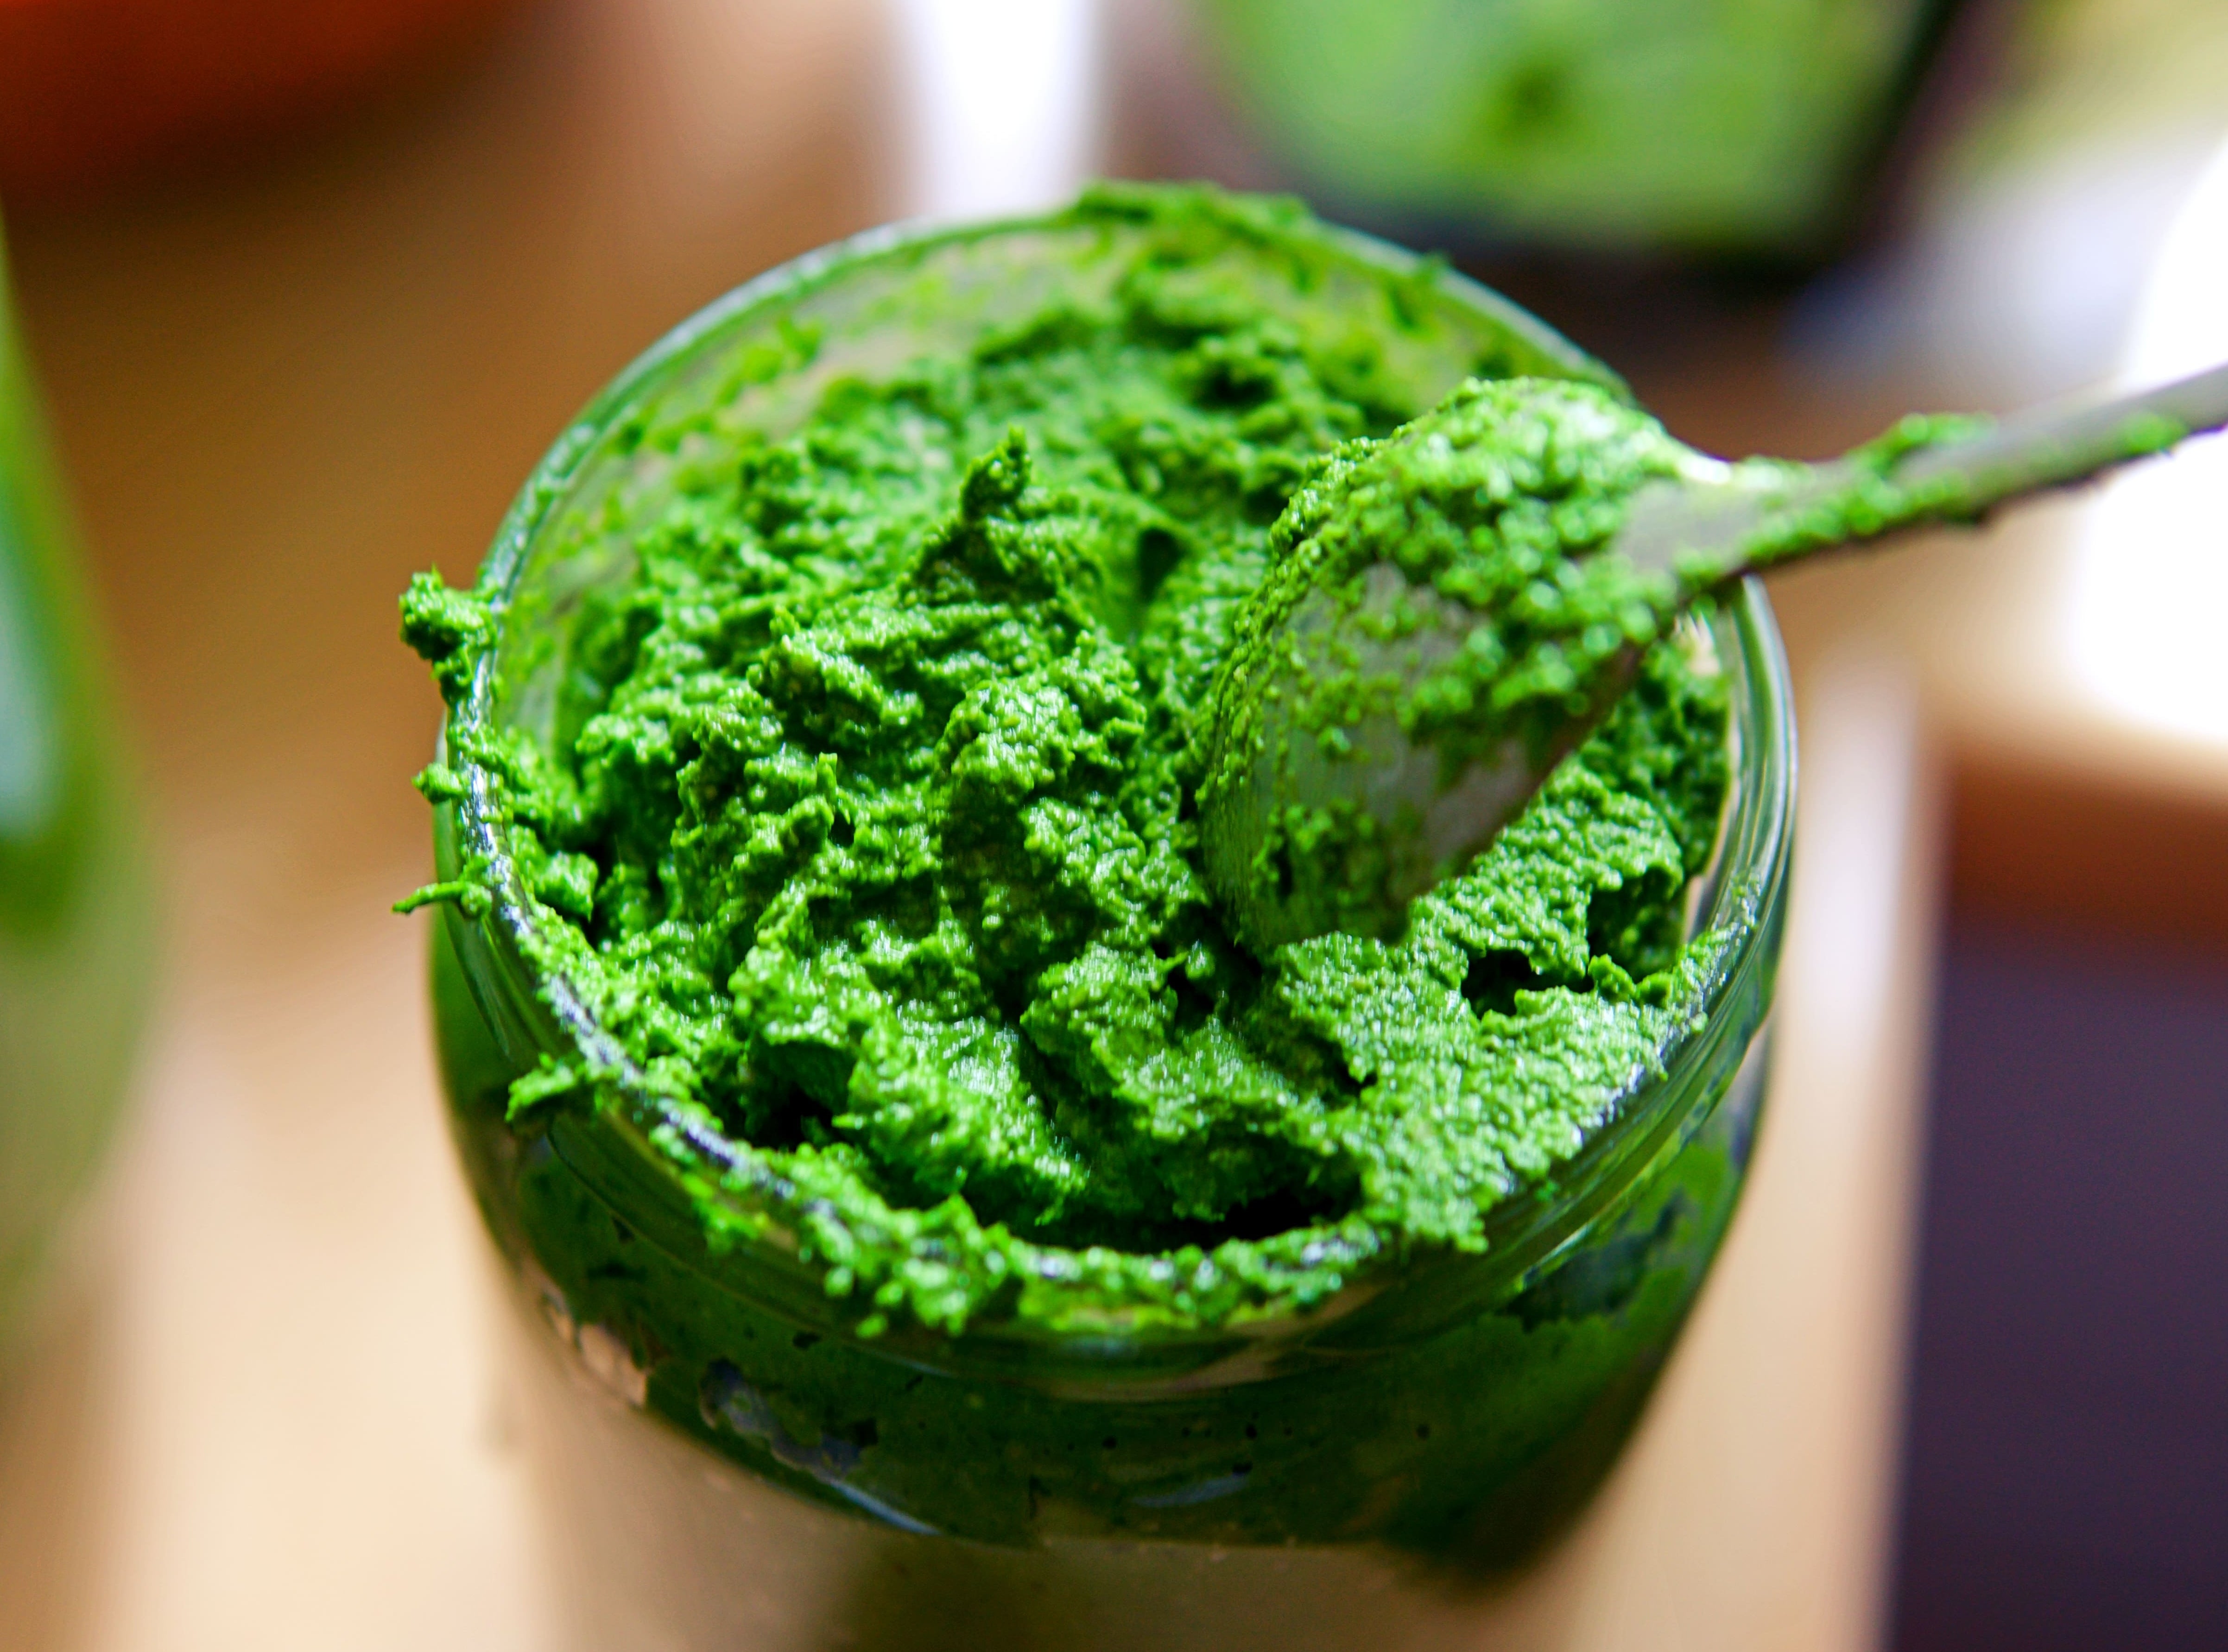 bärlauchpesto pesto verde selbstgemacht Rezept bärlauch sammeln aho vegan aufstrich dip